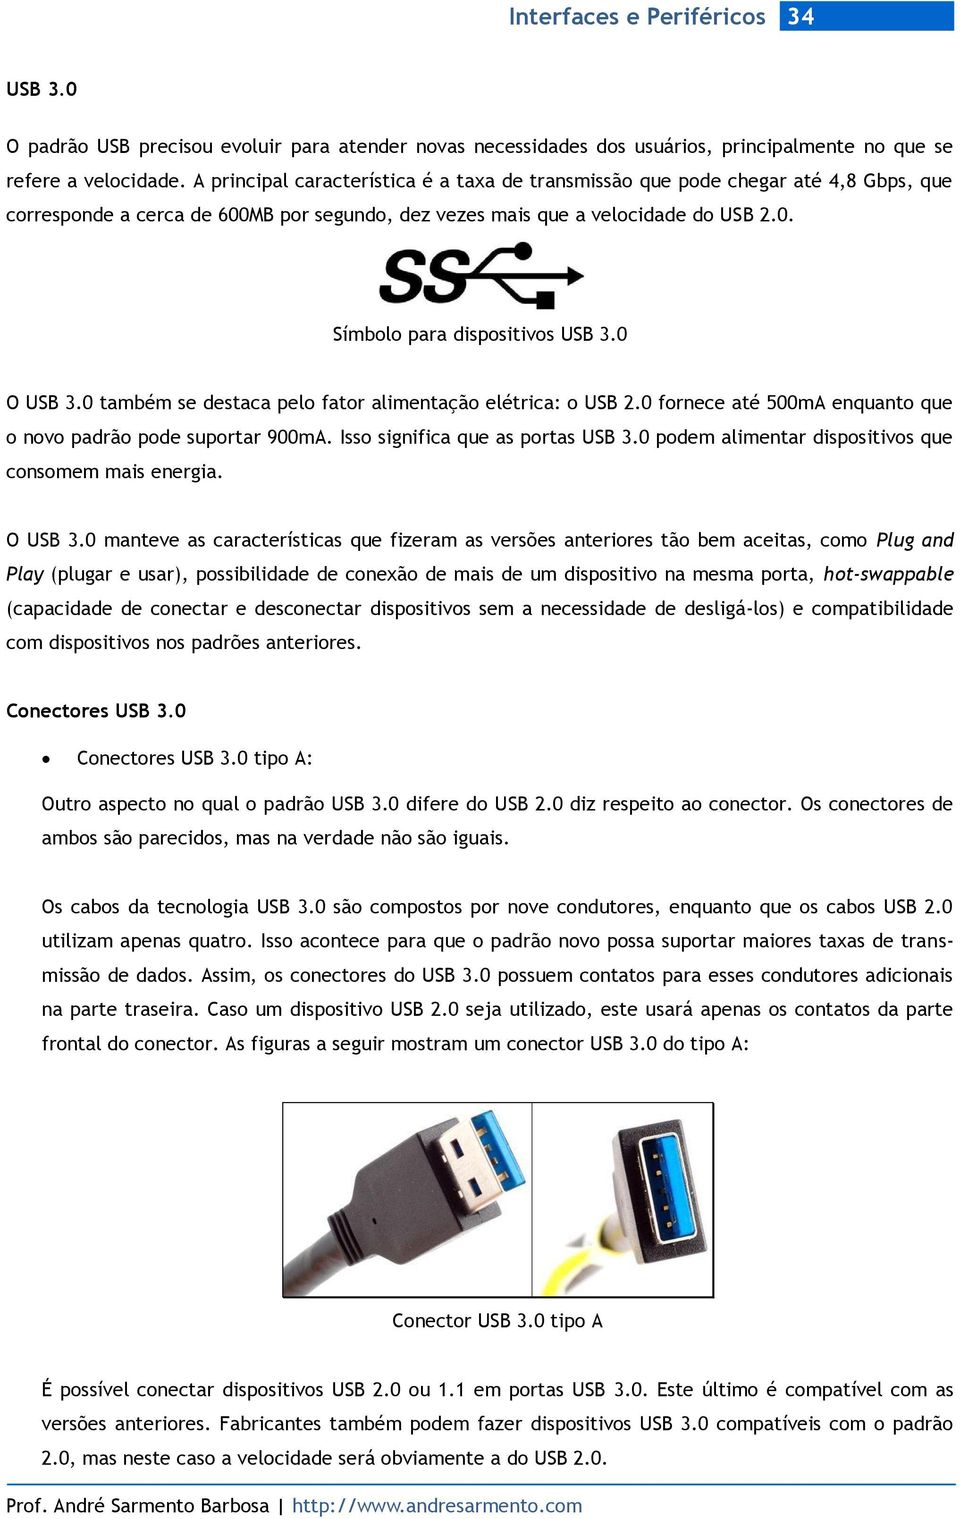 0 O USB 3.0 também se destaca pelo fator alimentação elétrica: o USB 2.0 fornece até 500mA enquanto que o novo padrão pode suportar 900mA. Isso significa que as portas USB 3.